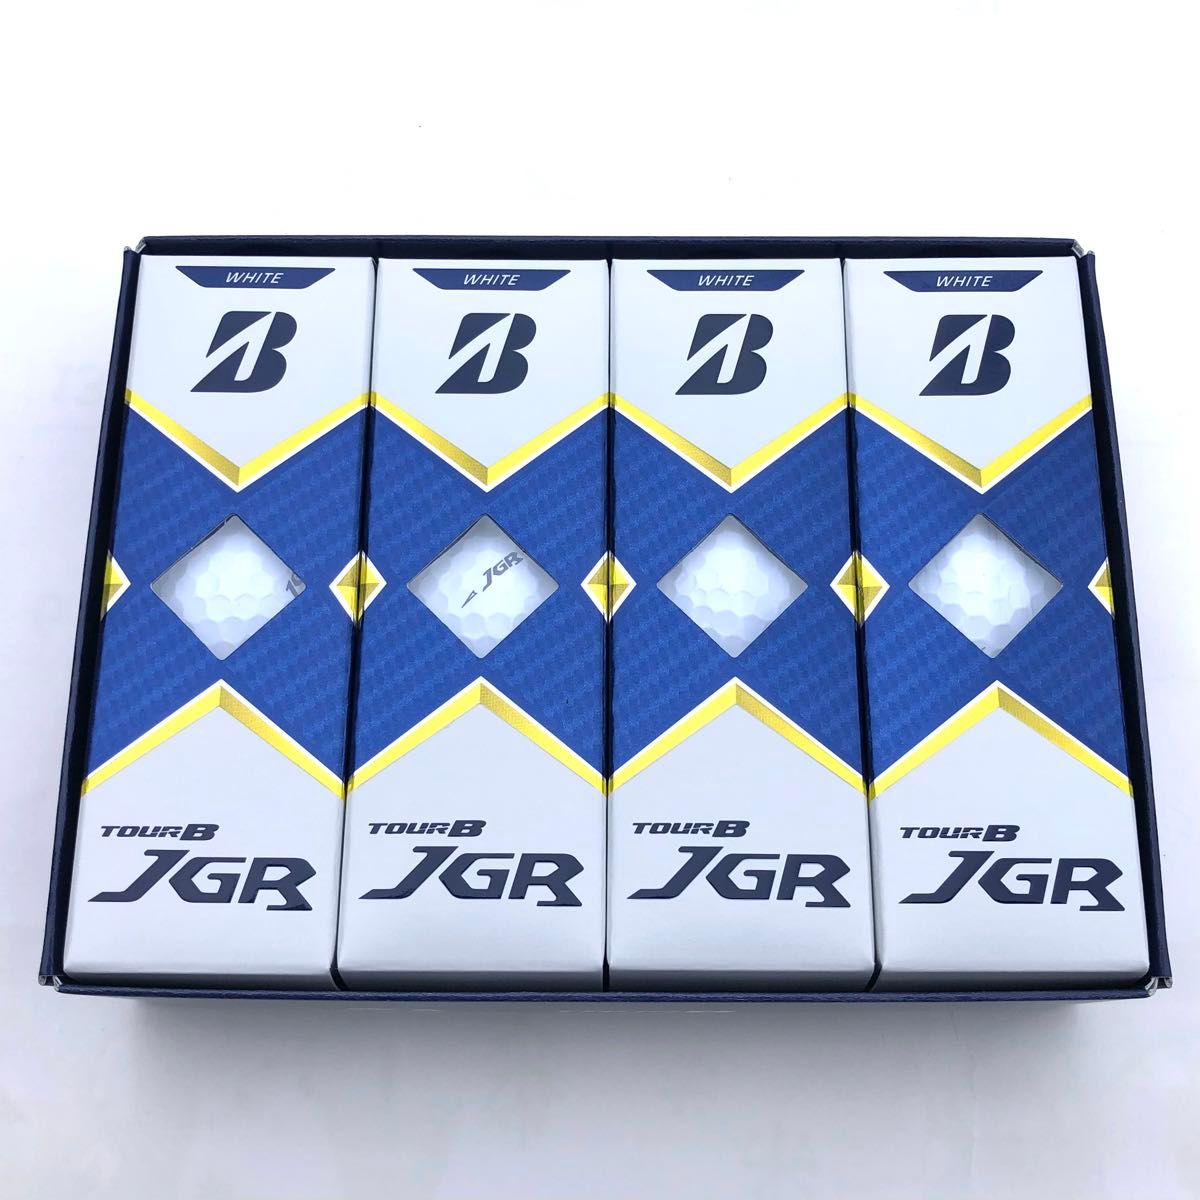 【在庫限り・新品・郵便局発送】ゴルフボール ブリヂストン  TOUR B JGR 2021 ホワイト White 1ダース 12個